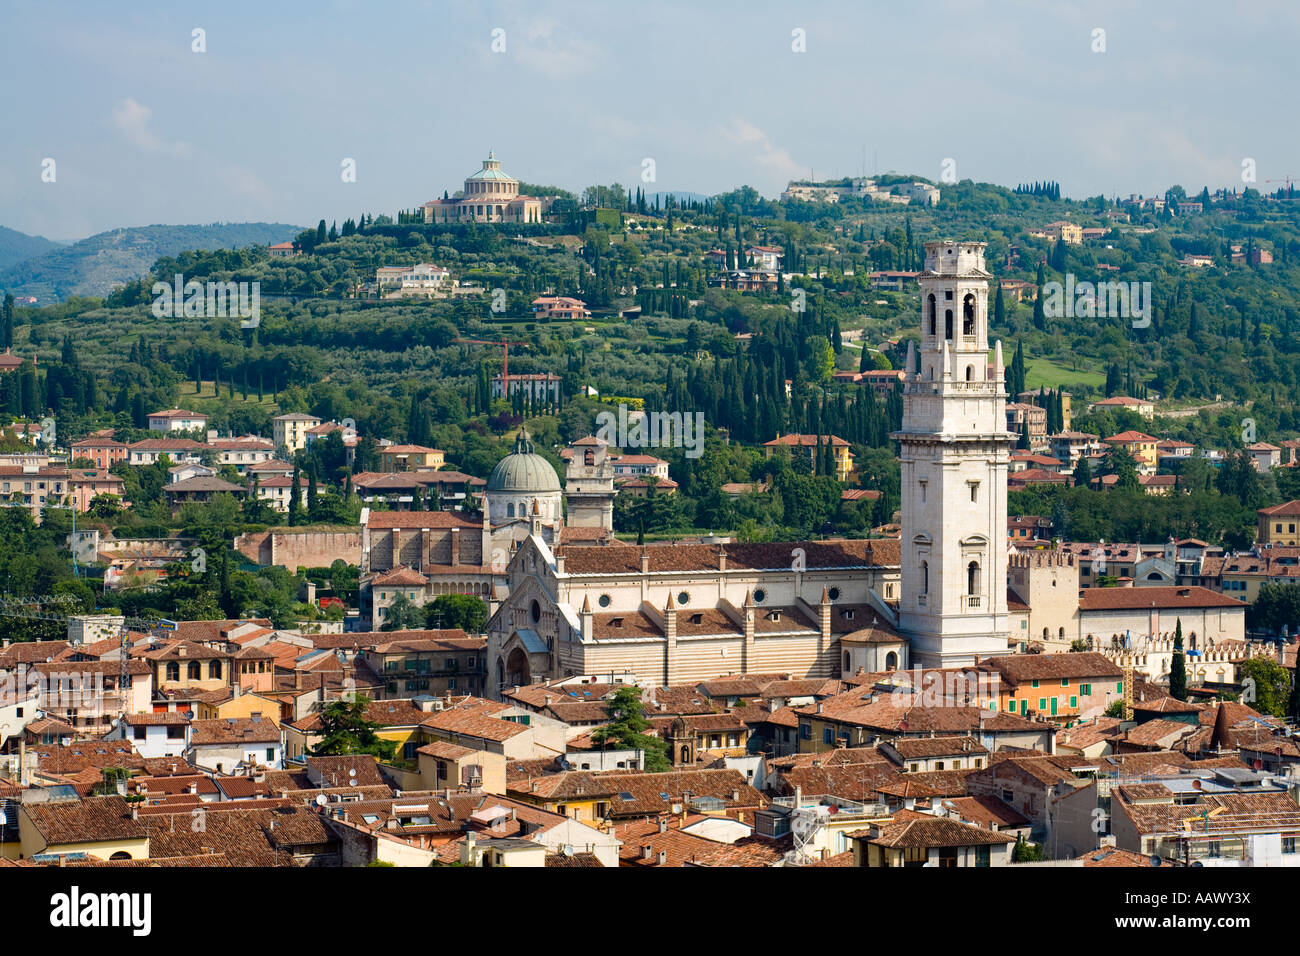 Cityscape of Verona with the Duomo dominating Verona Italy Stock Photo